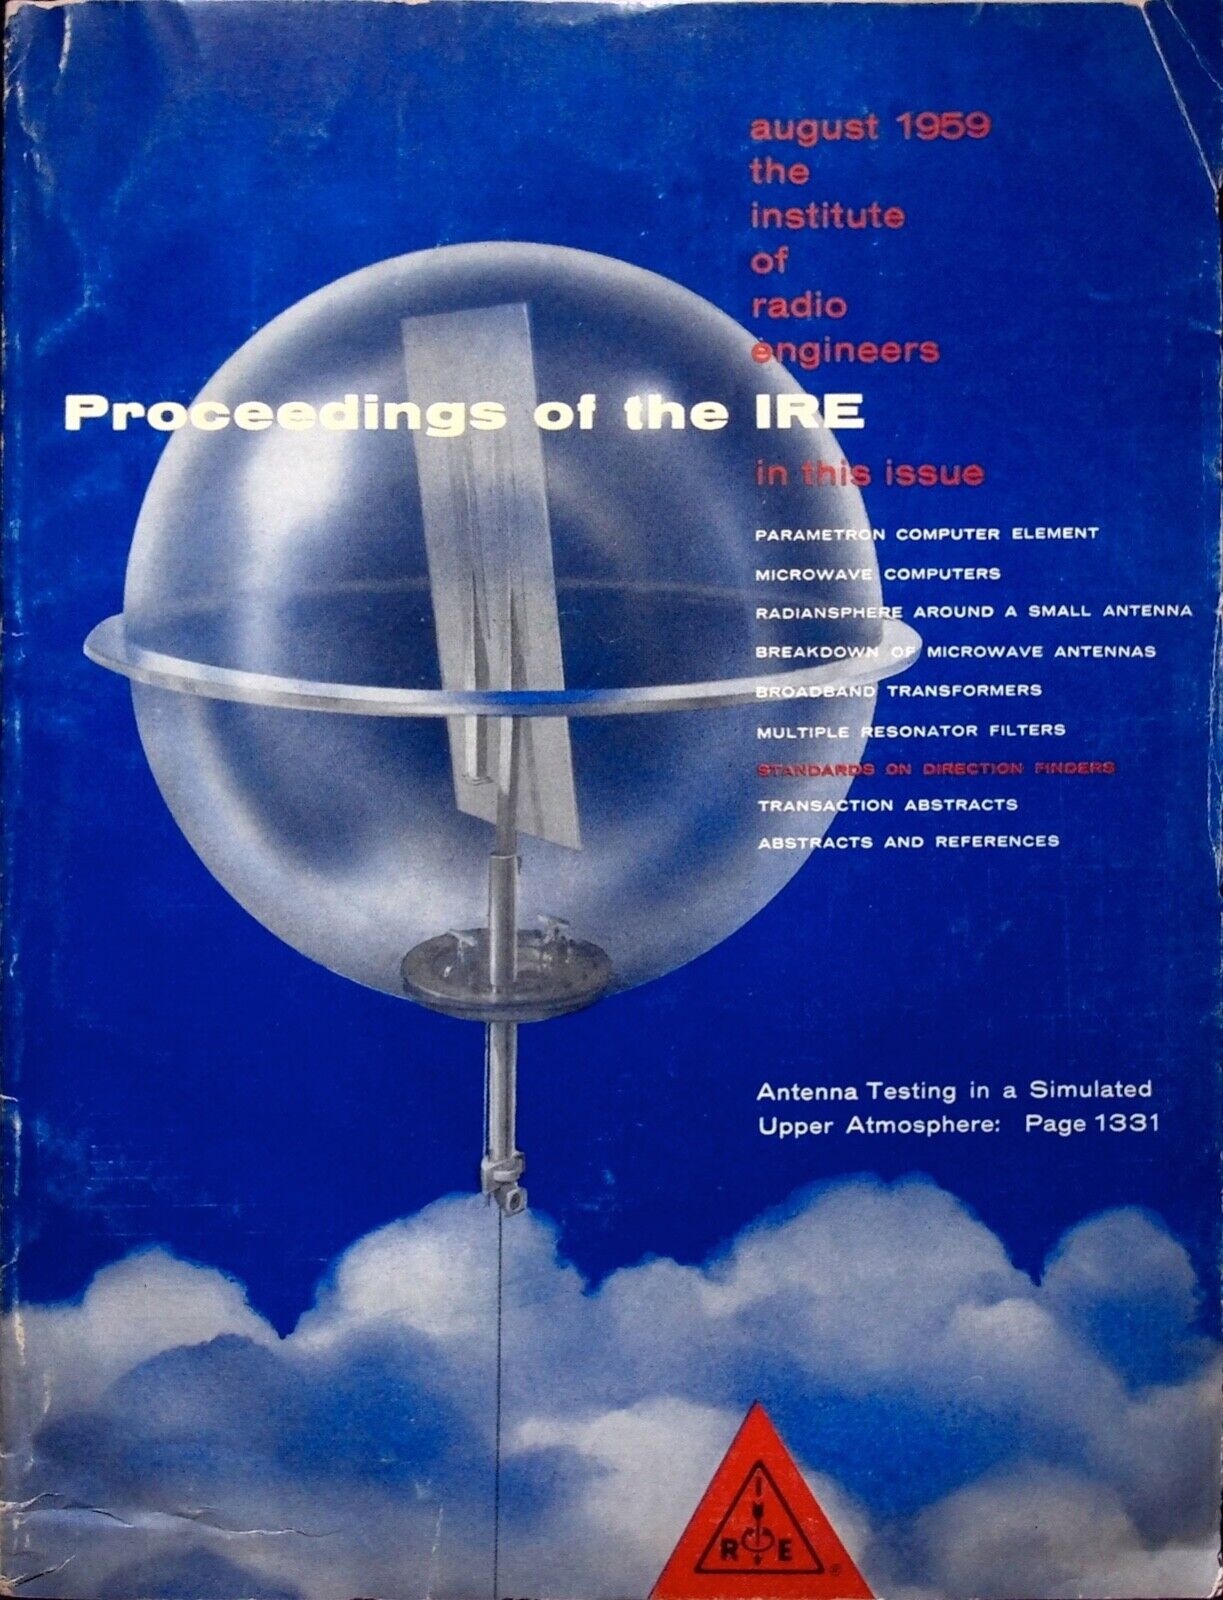 PROCEEDINGS OF THE IRE AUGUST 1959 - RADIO MAGAZINE